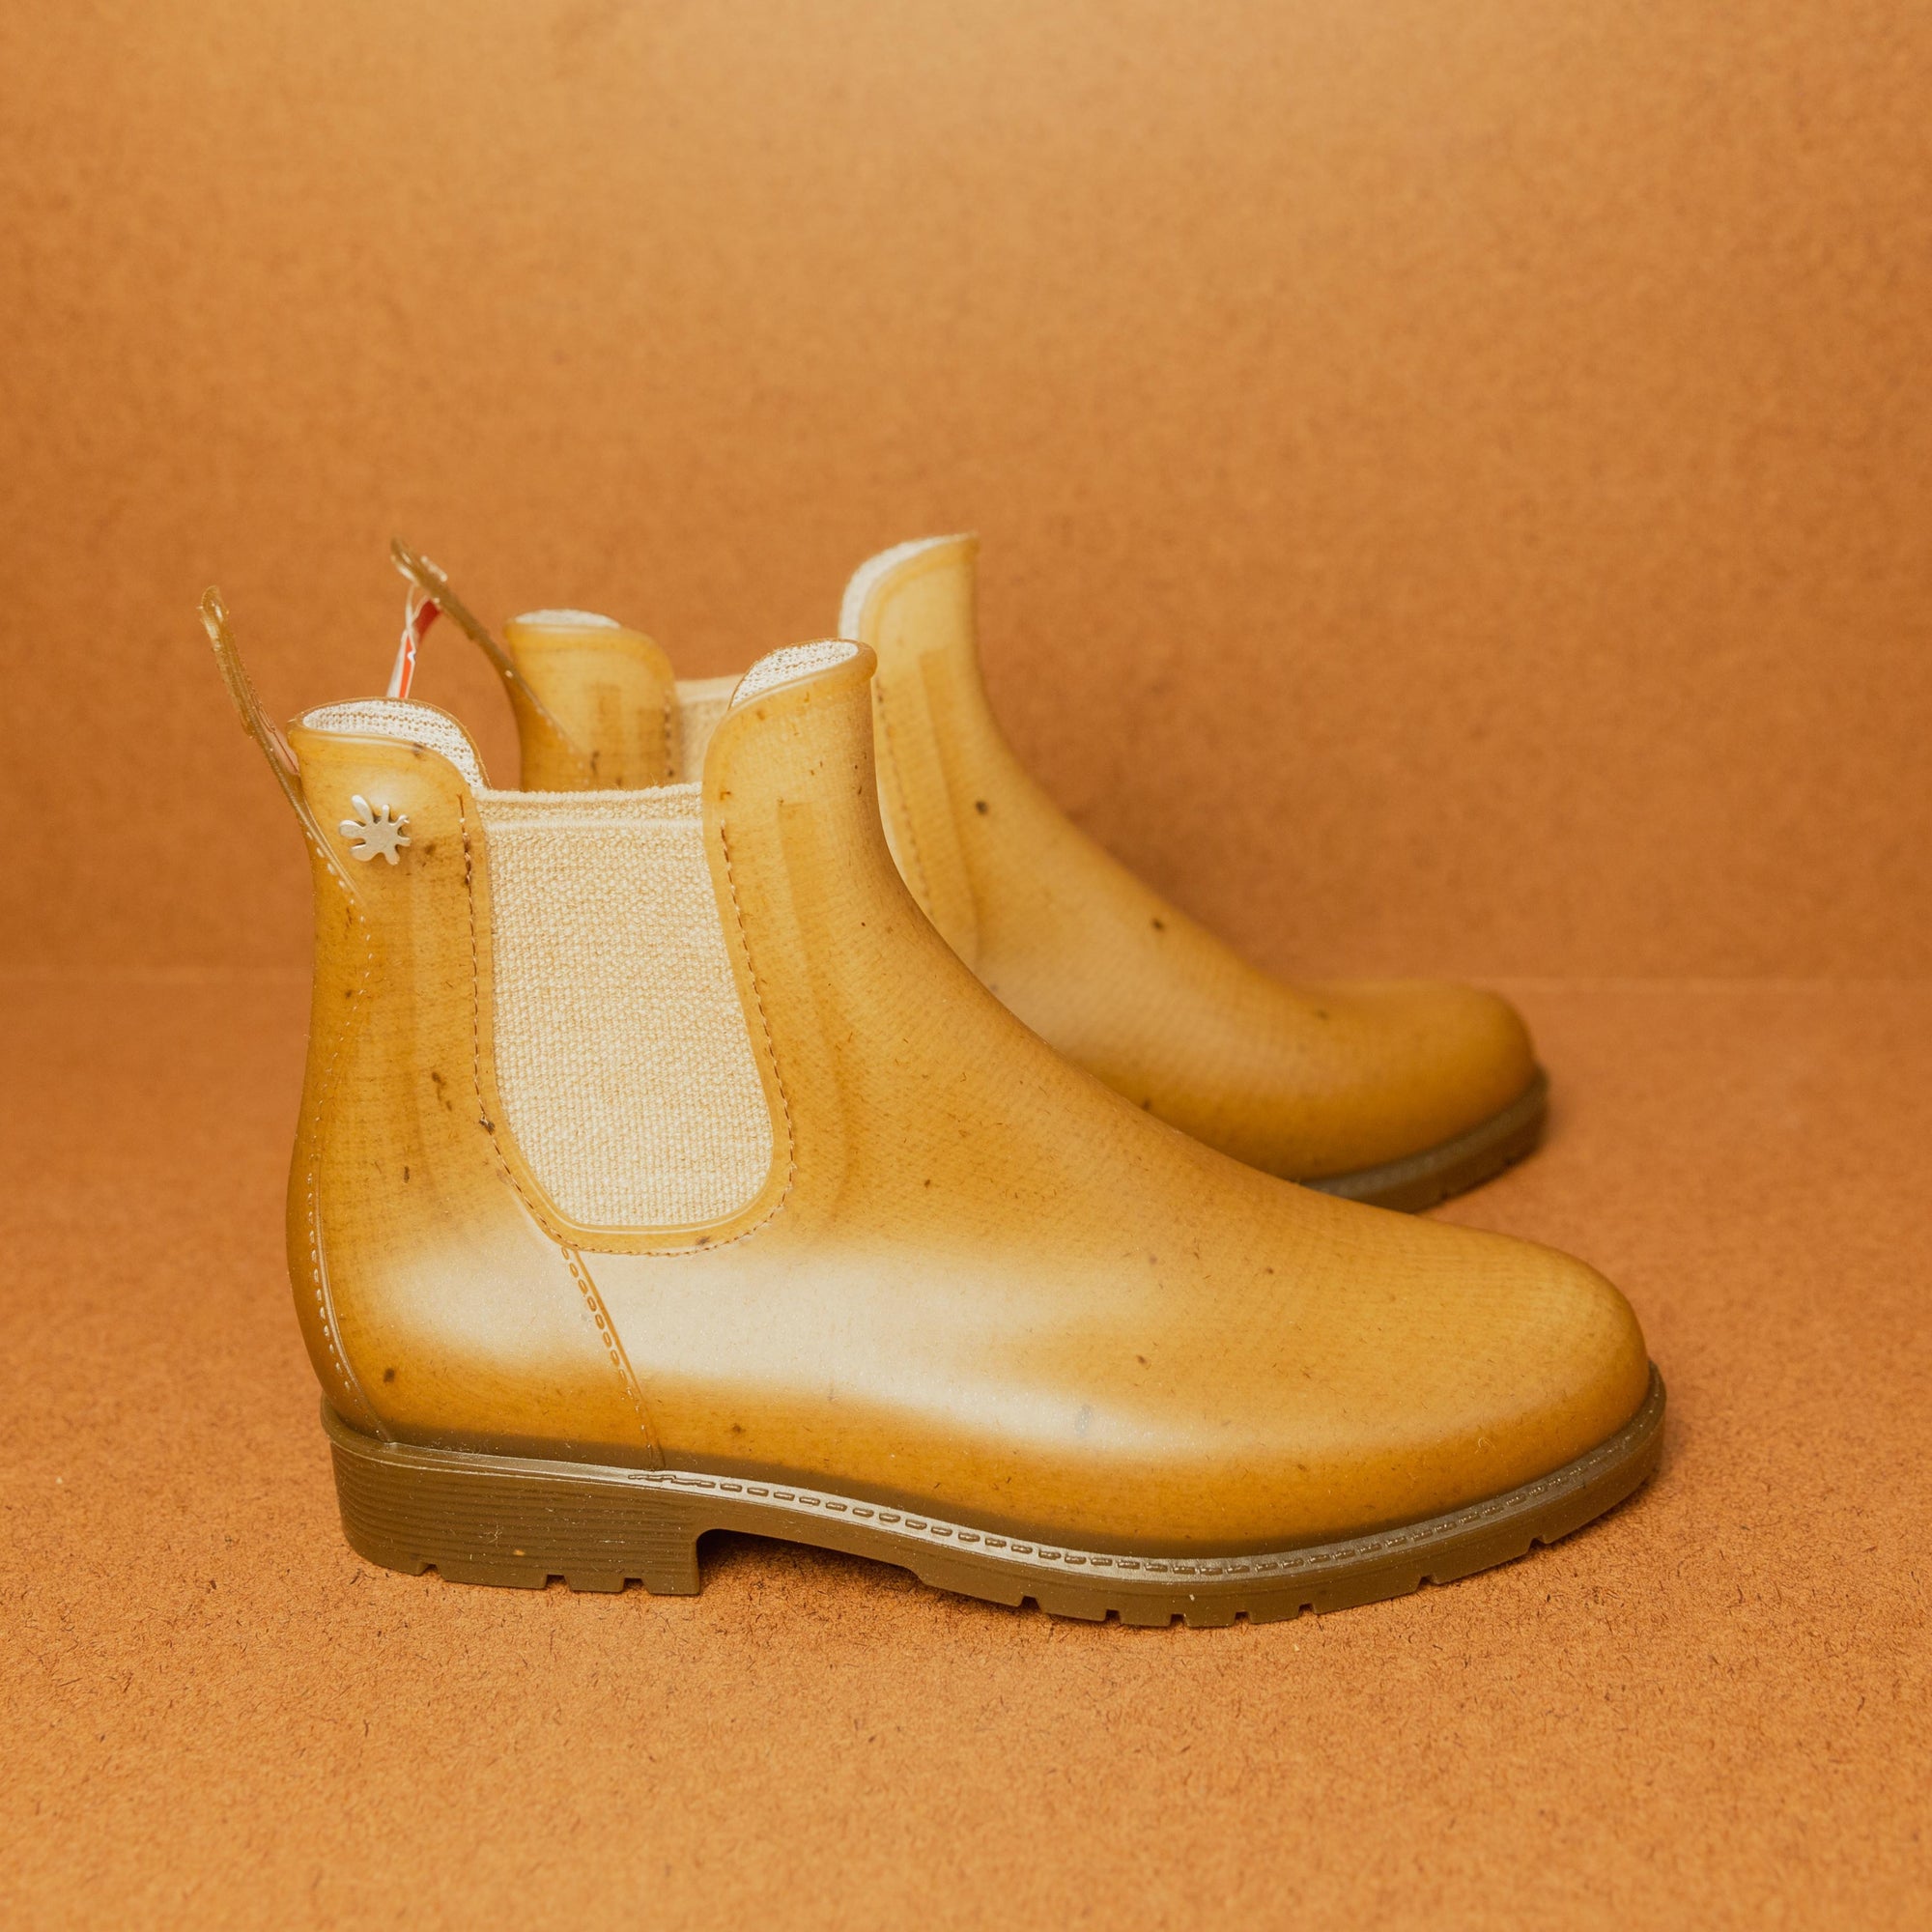 Plasticana Chelsea Rain Boot - Cream right side